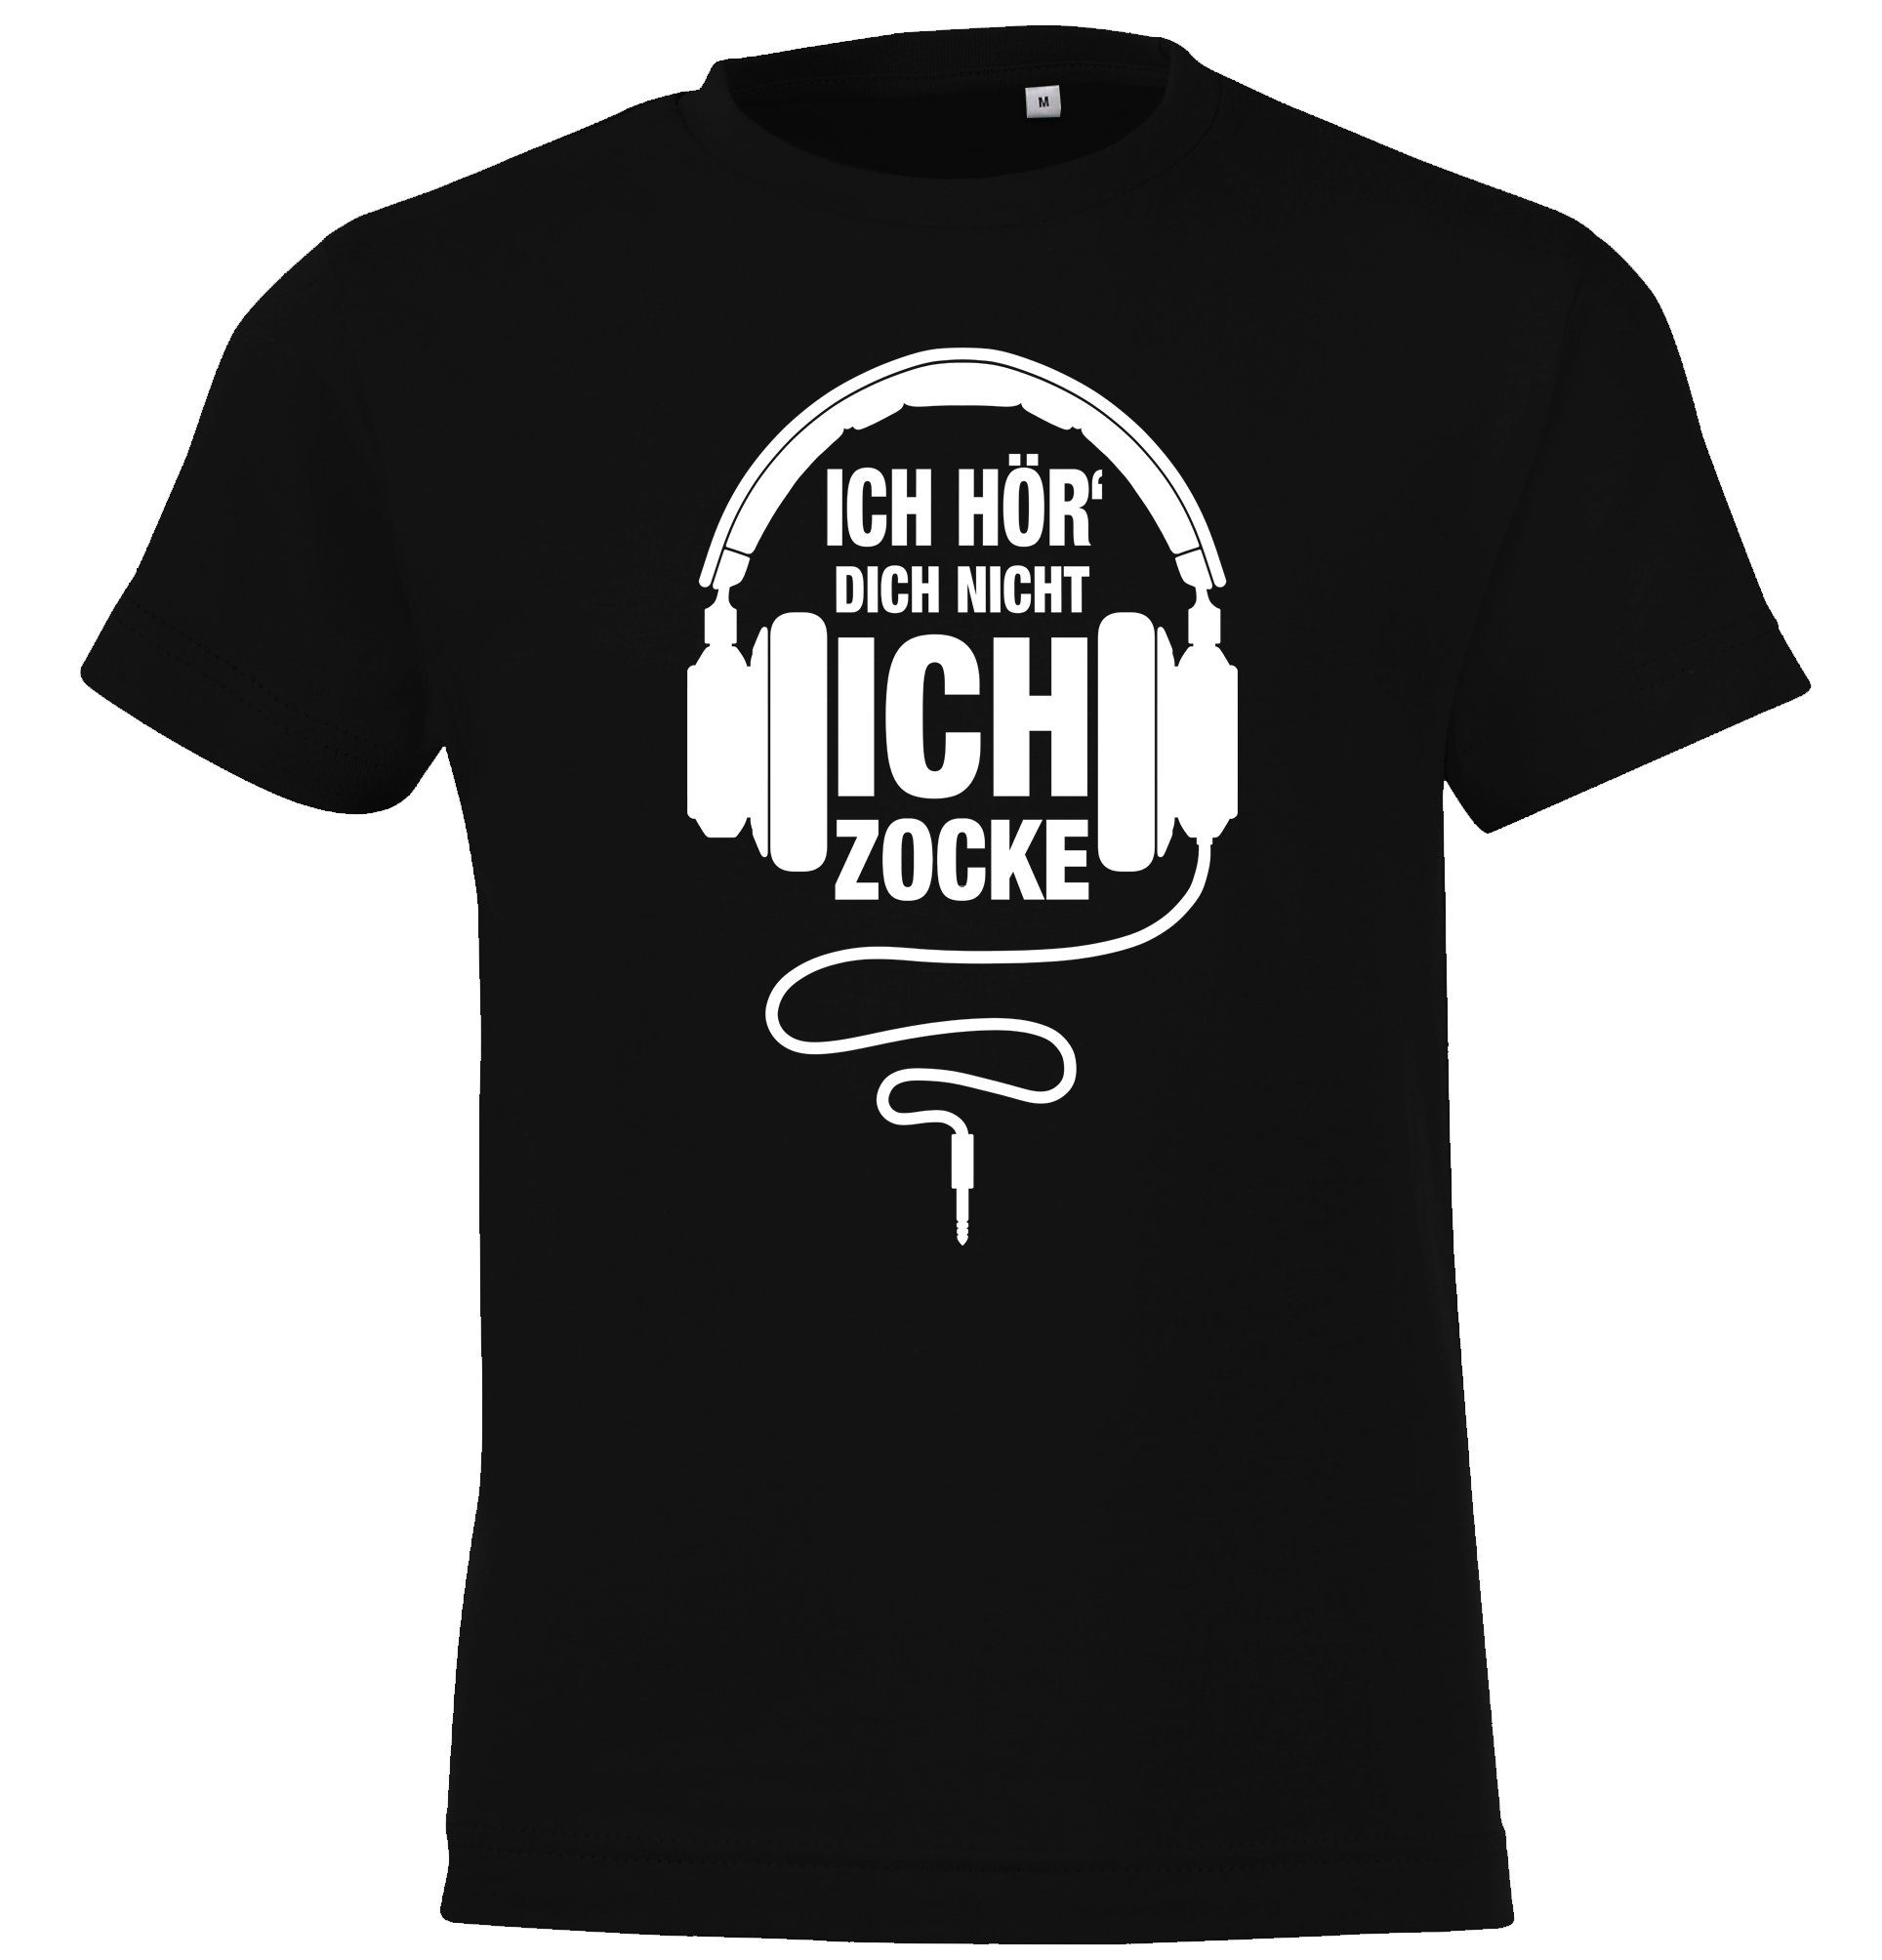 Youth Zocke Frontprint Shirt Ich mit Gamer Designz Schwarz T-Shirt lustigem Kinder